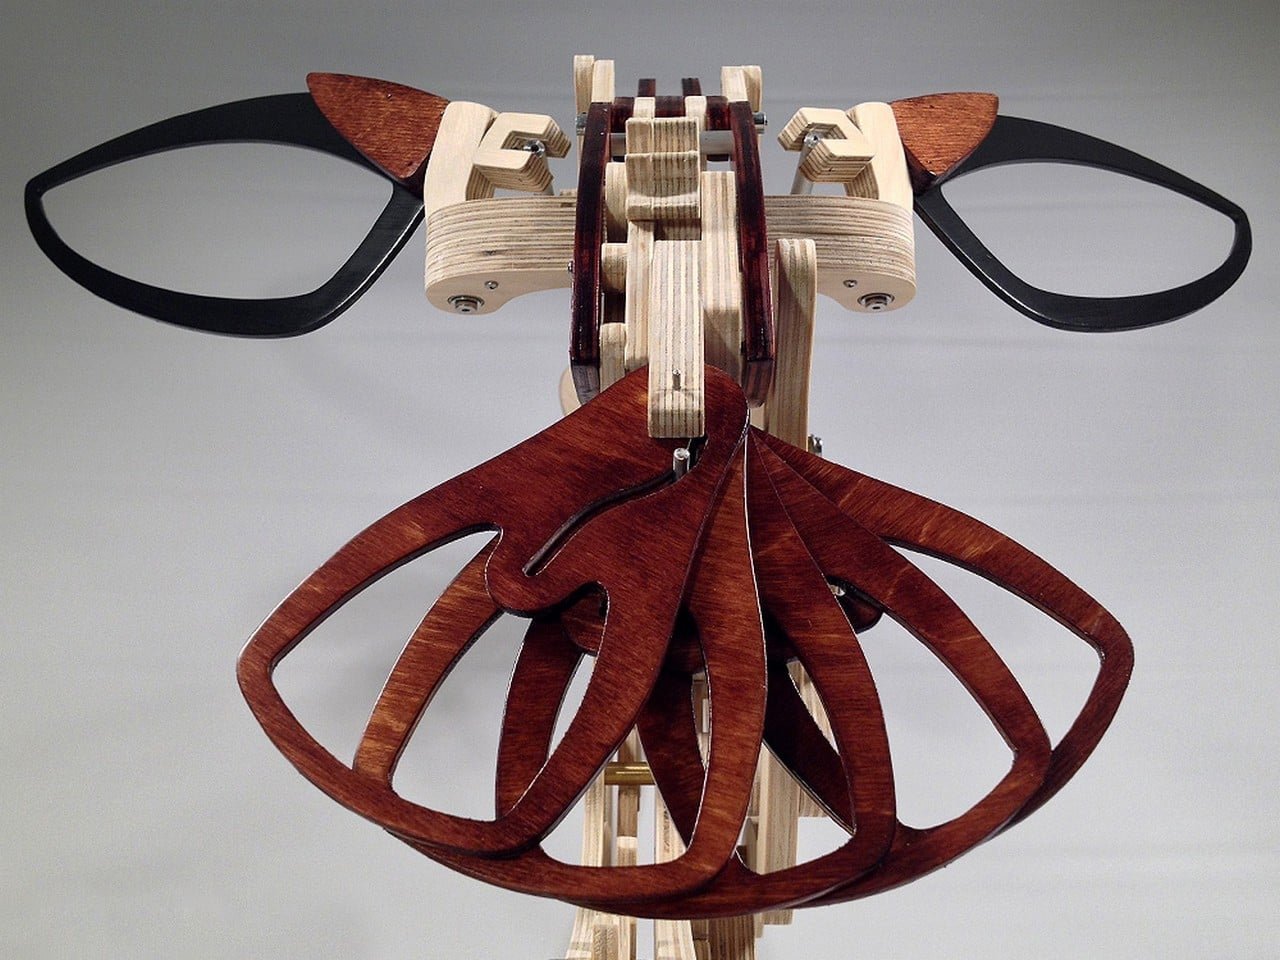 Деревянная фантазия: посмотрите на удивительные механизмы американского художника Дерека Хаггера